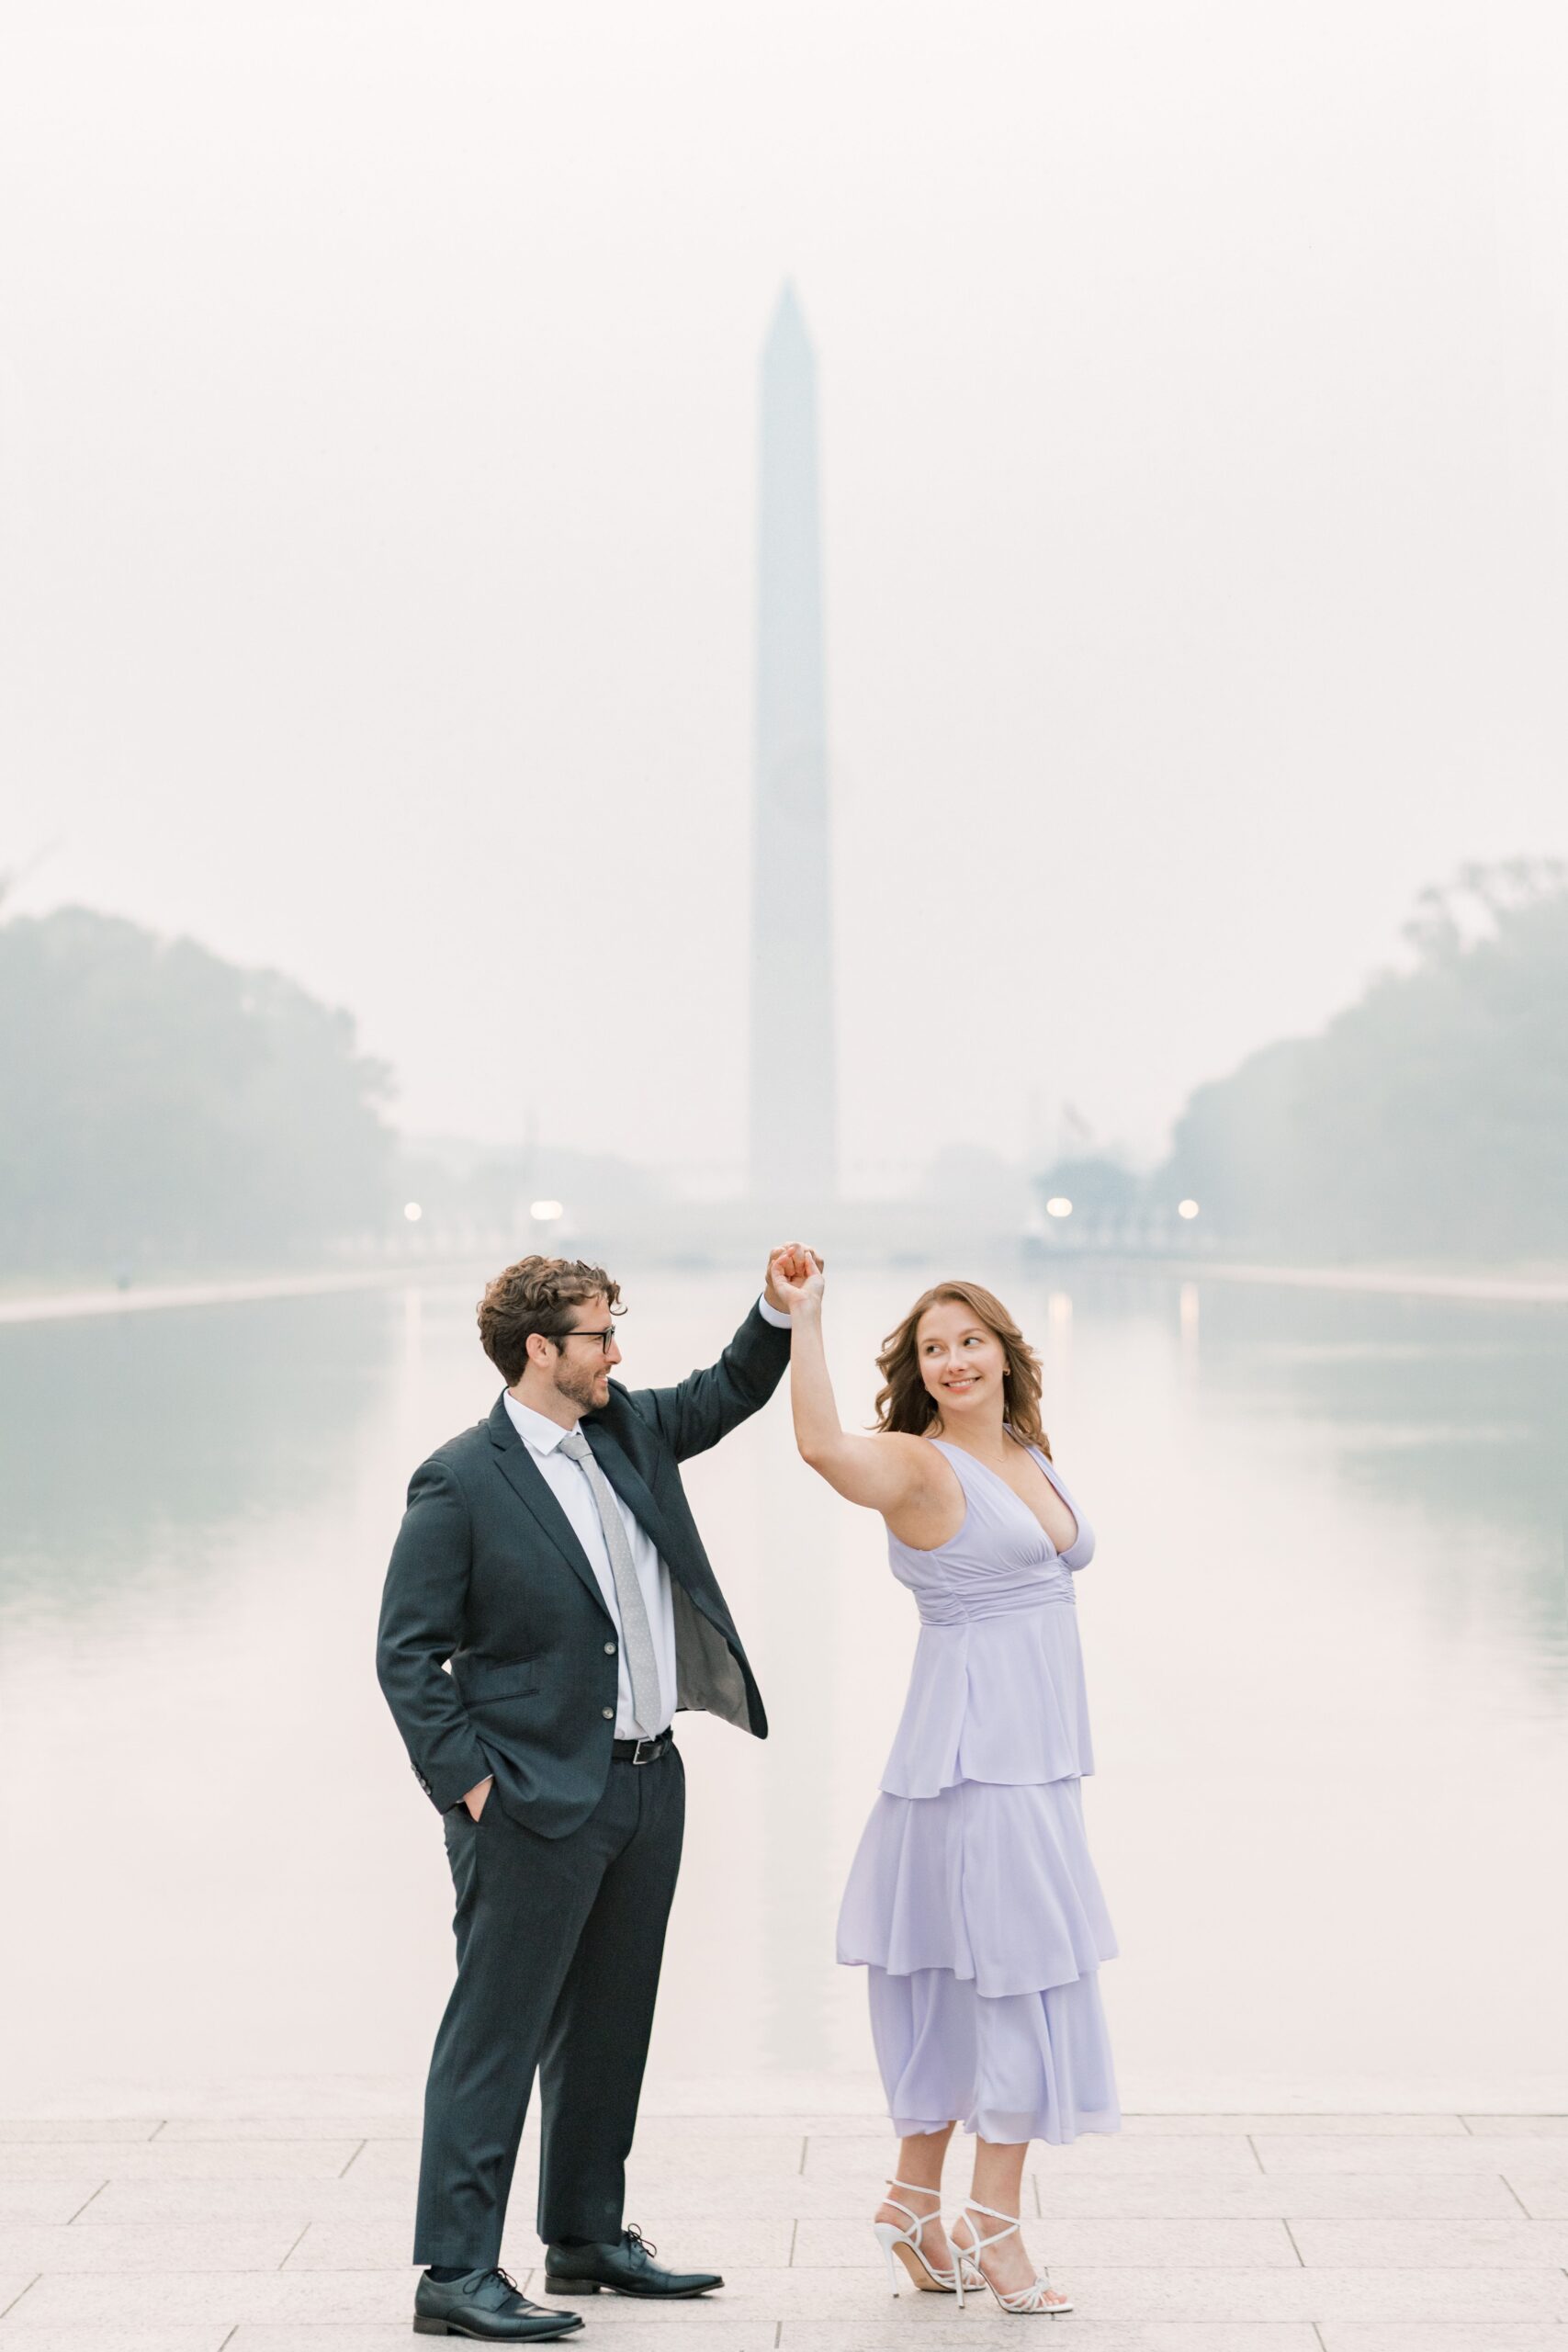 Hazy Washington Monument and Reflecting Pool engagement photos in Washington, DC.